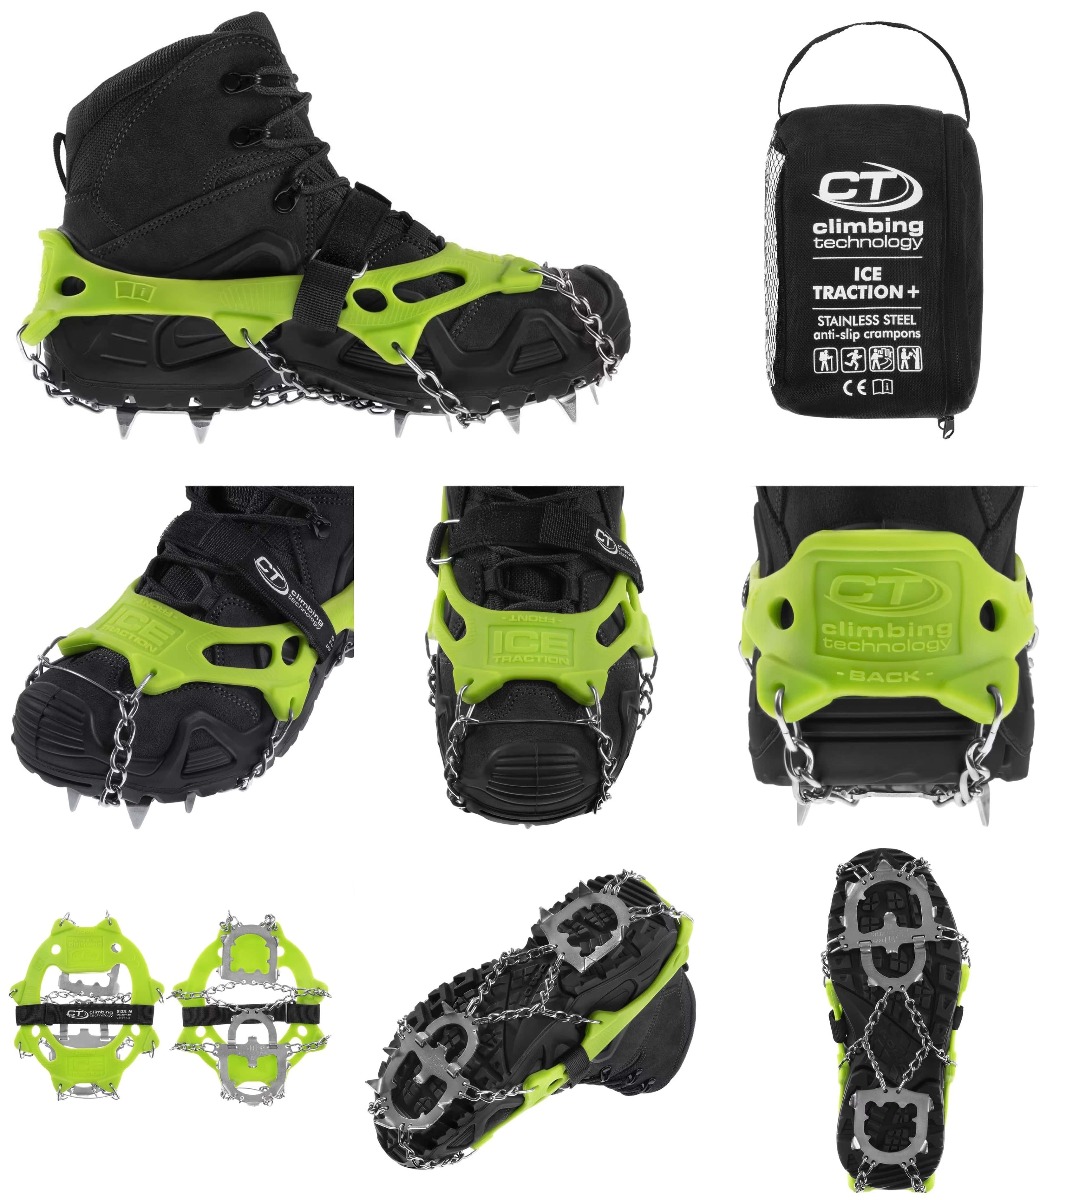 Pripravite se na varno in udobno hojo v zimskih razmerah z Climbing Technology Ice Traction Plus derezami. Zagotovite si stabilnost in varnost na ledenih in zasneženih površinah. Univerzalne, trpežne in enostavne za namestitev. Primerno za pohodnike, plez